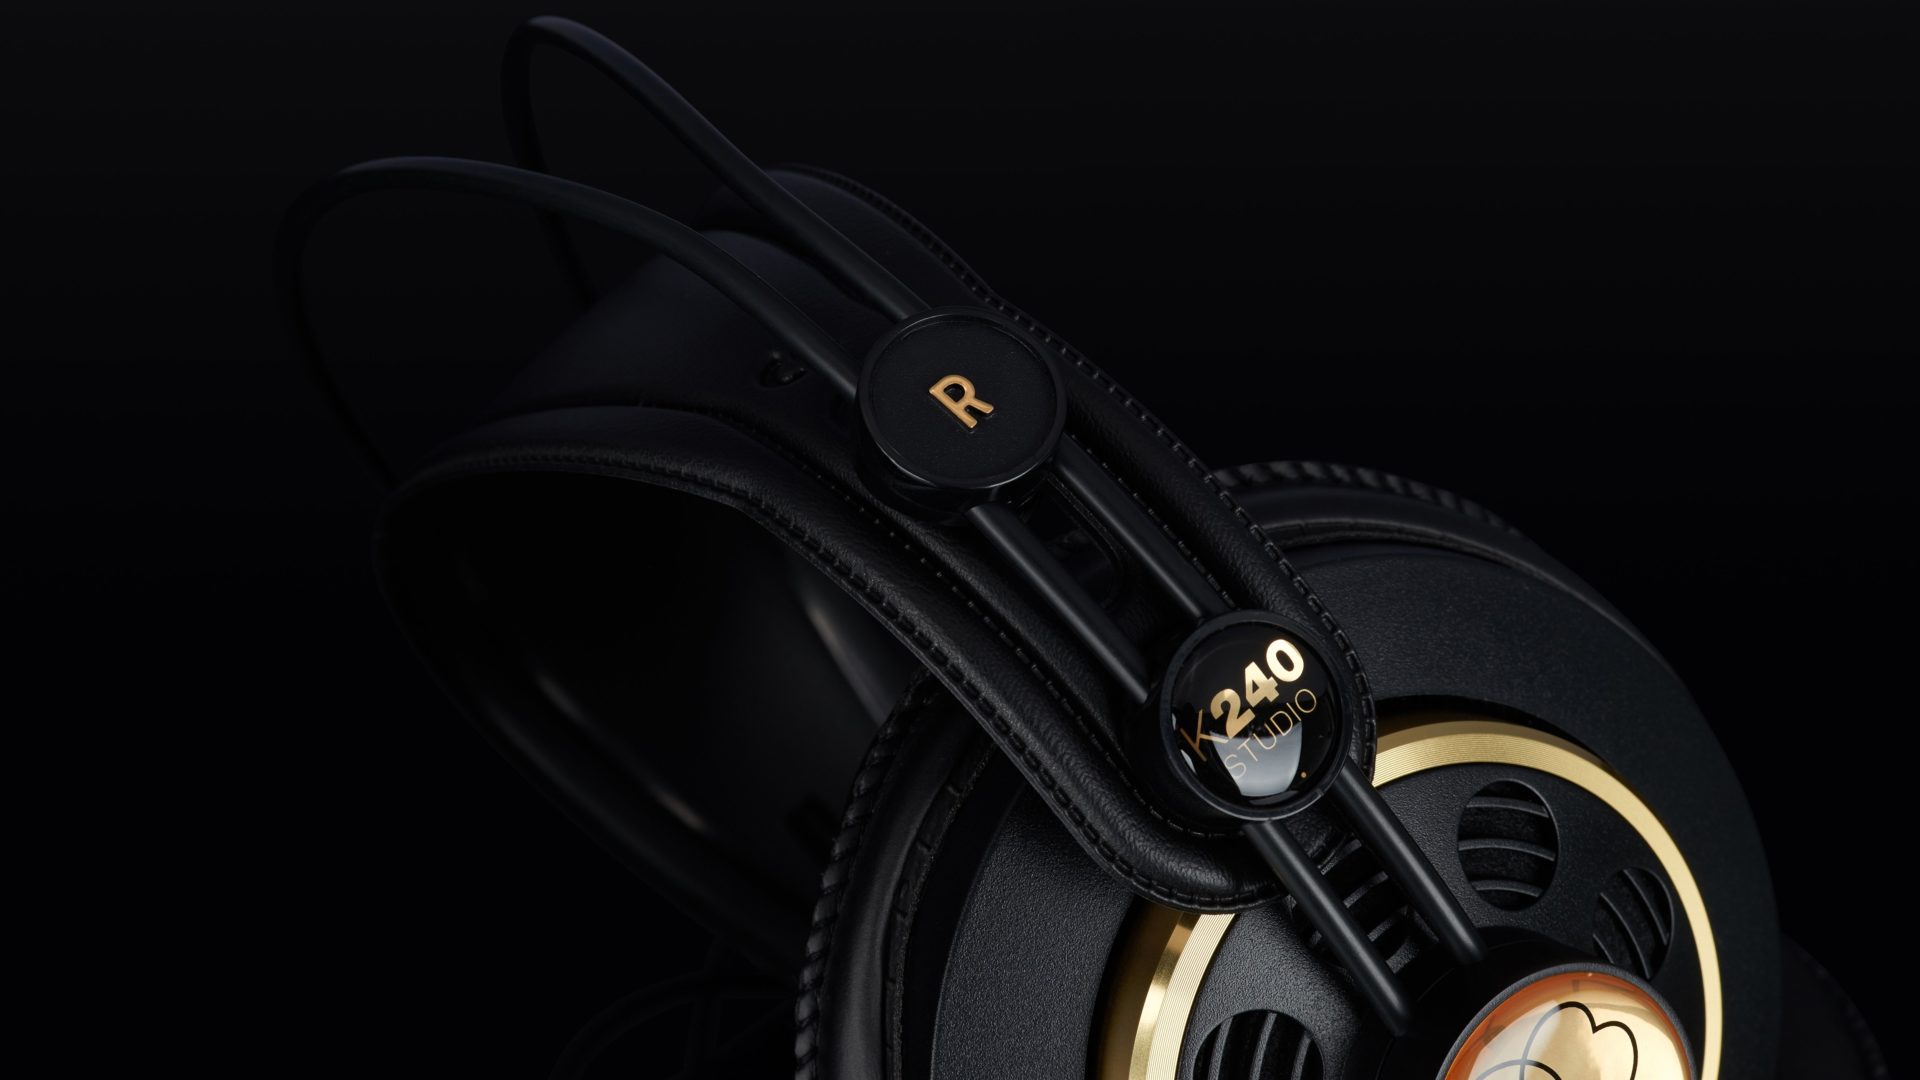 AKG K240 Studio headphones review - Higher Hz